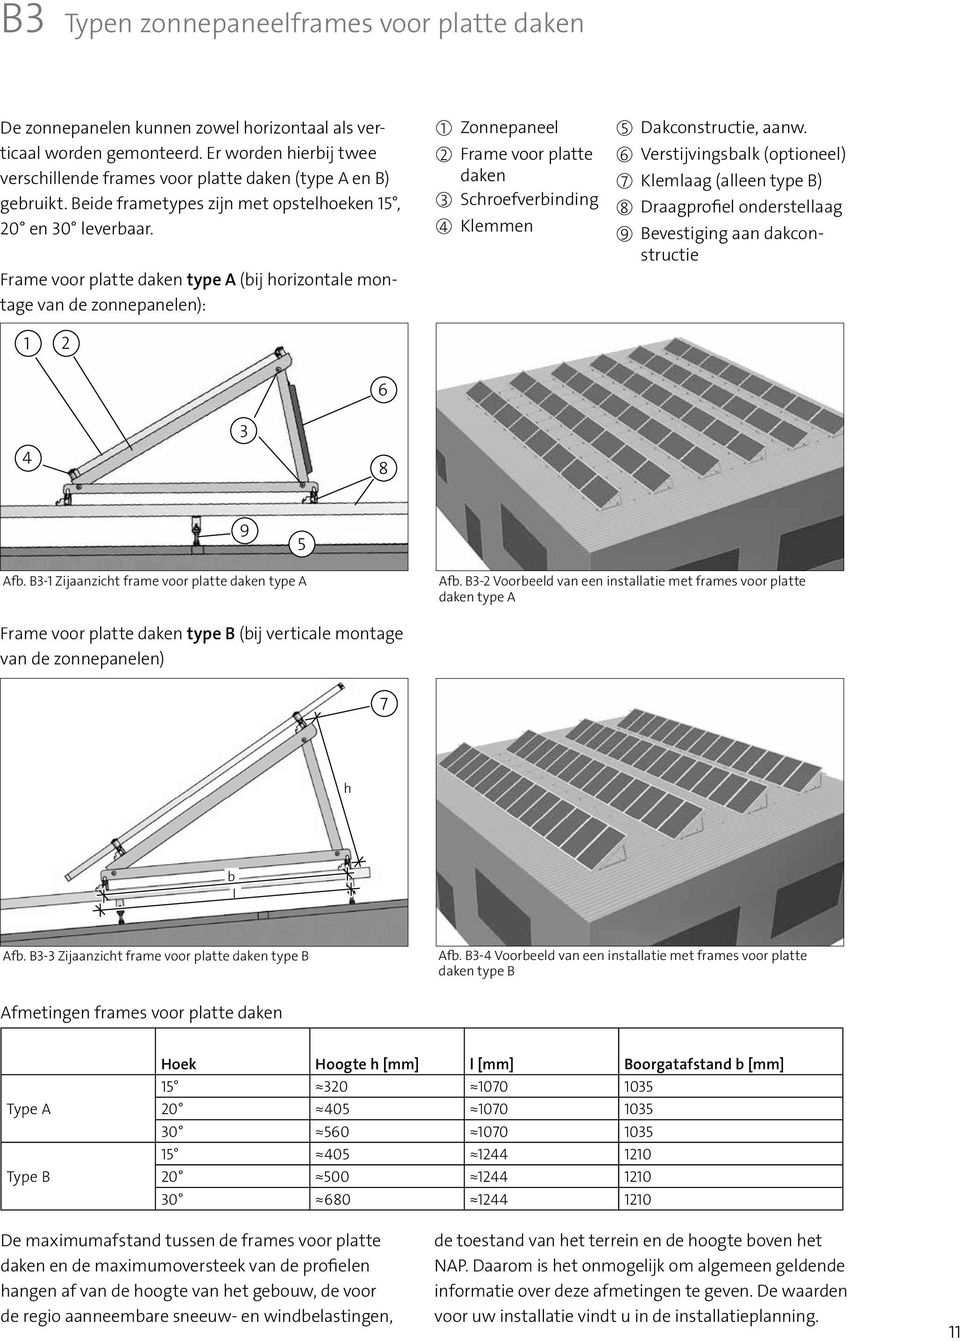 Frame voor platte daken type A (bij horizontale montage van de zonnepanelen): 1 2 1 Zonnepaneel 2 Frame voor platte daken 3 Schroefverbinding 4 Klemmen 5 Dakconstructie, aanw.